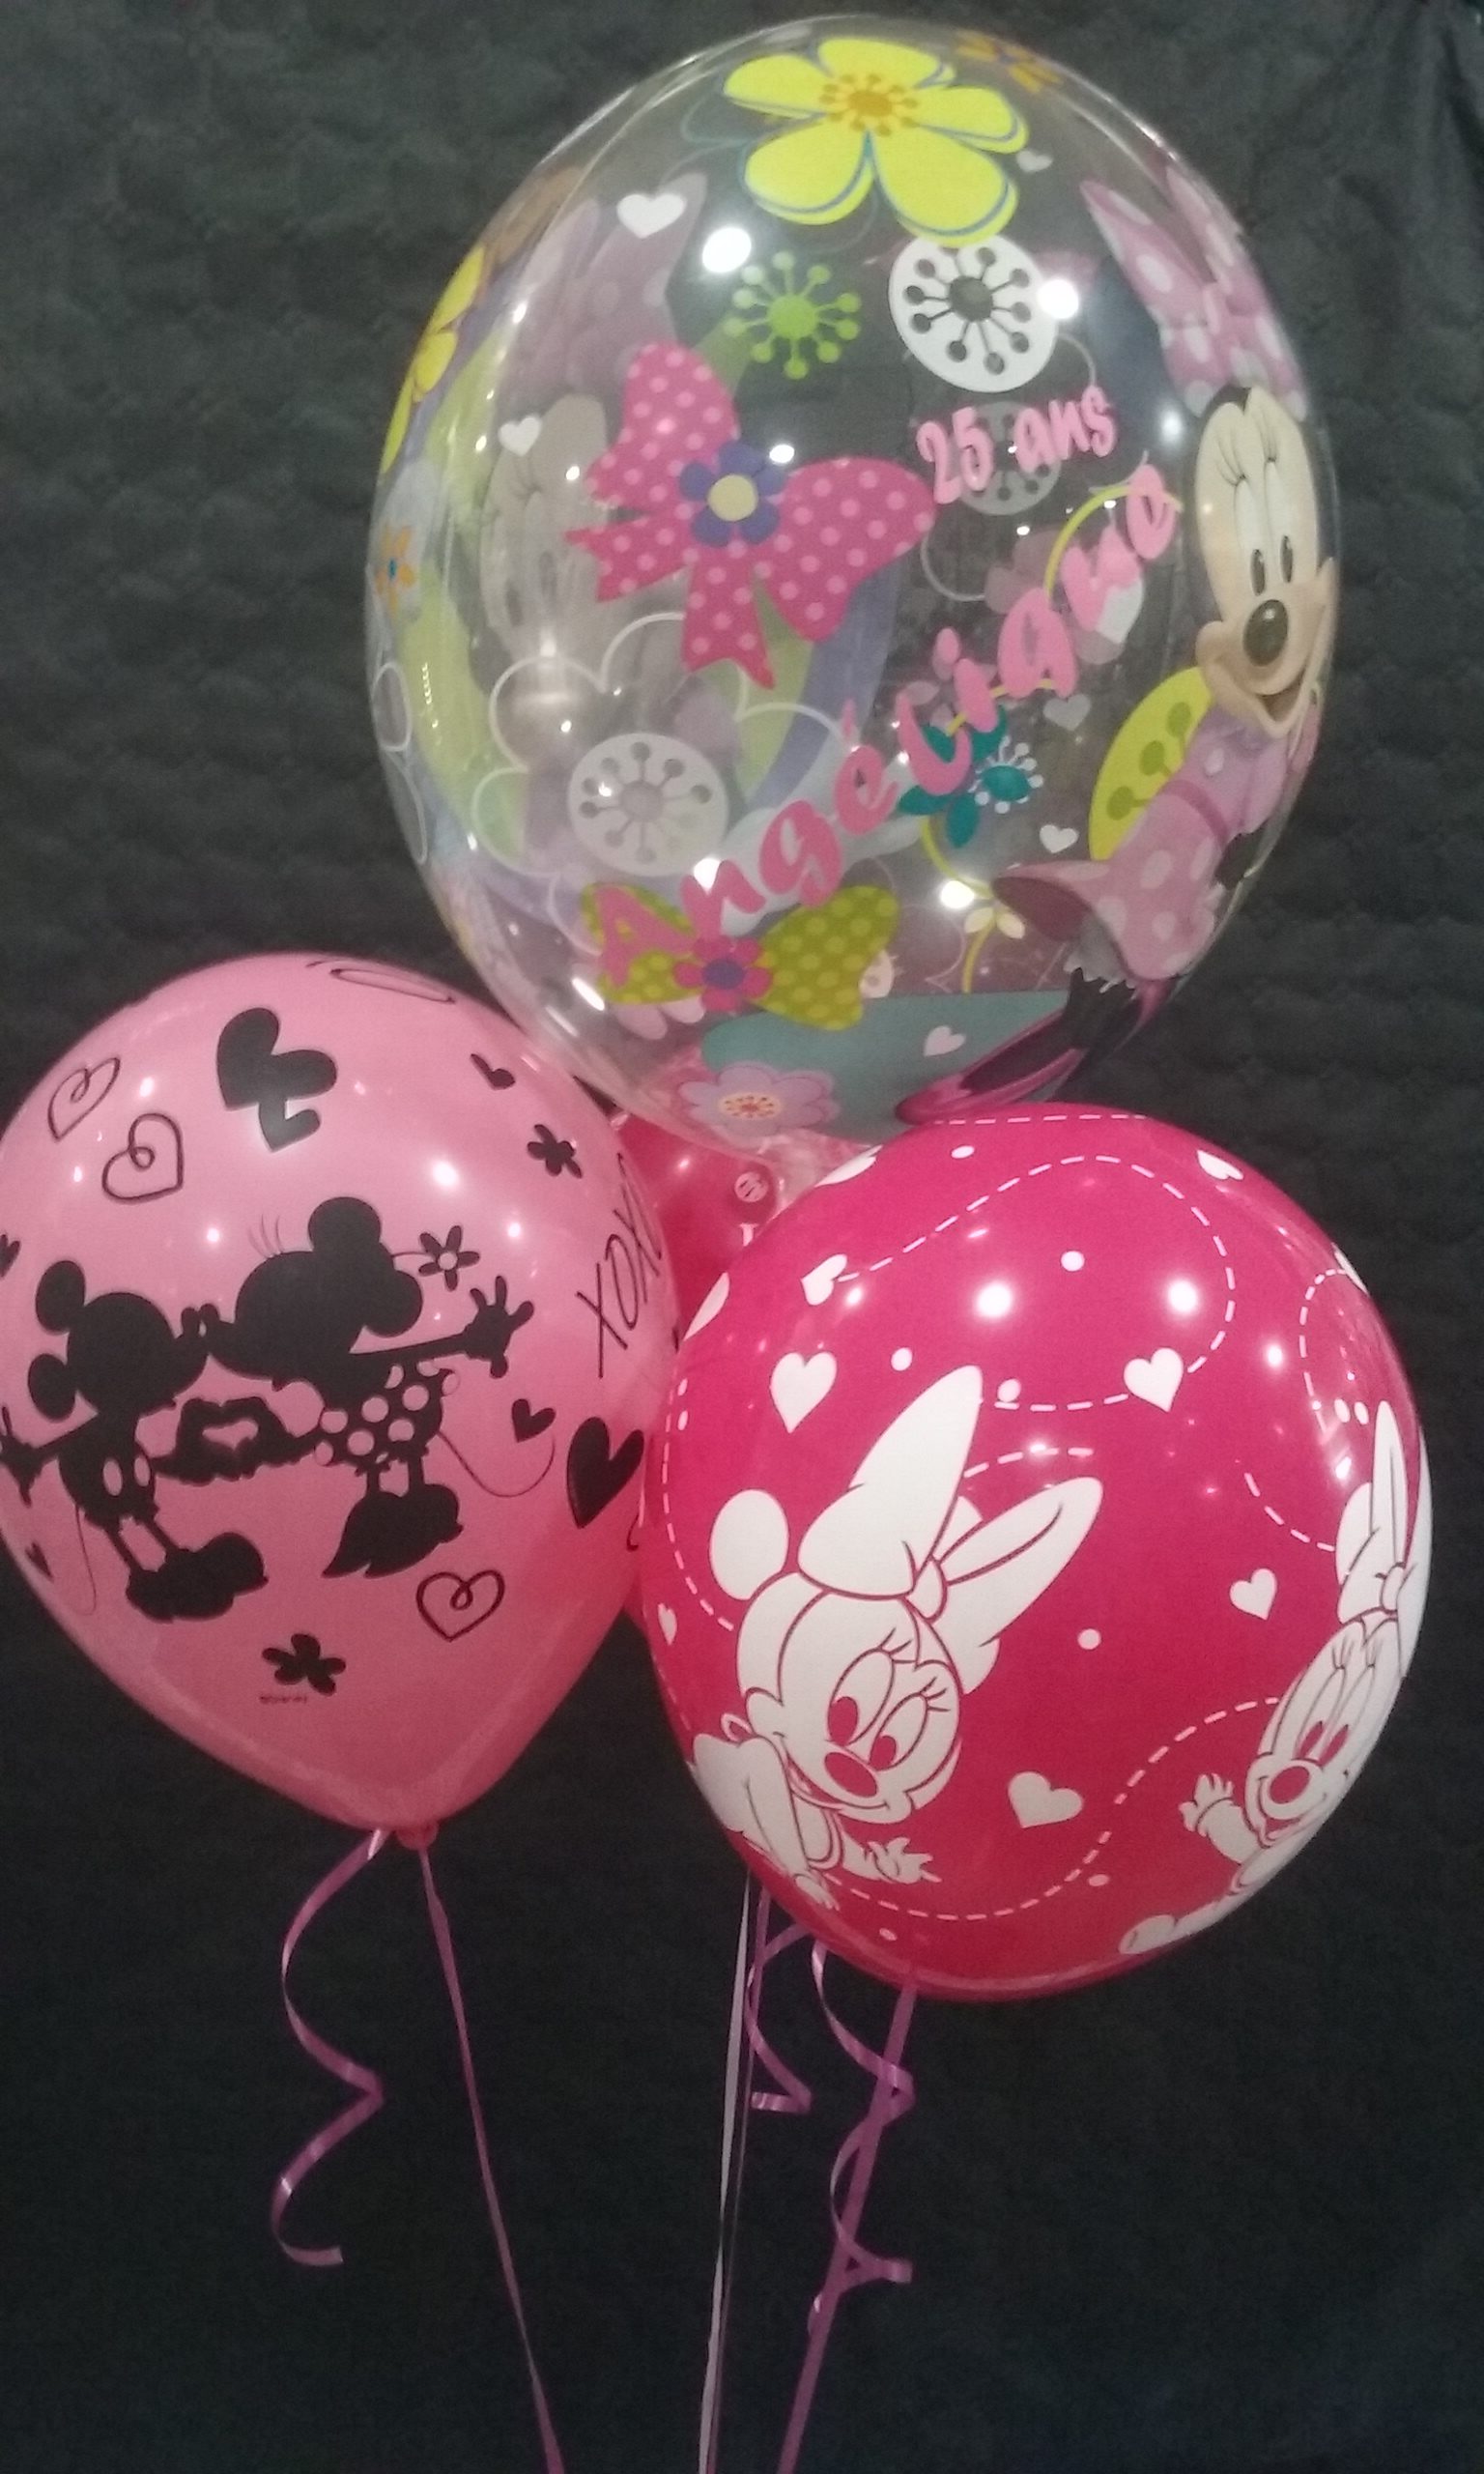 Ballons hélium, un large choix de ballons pour toutes les occasions!